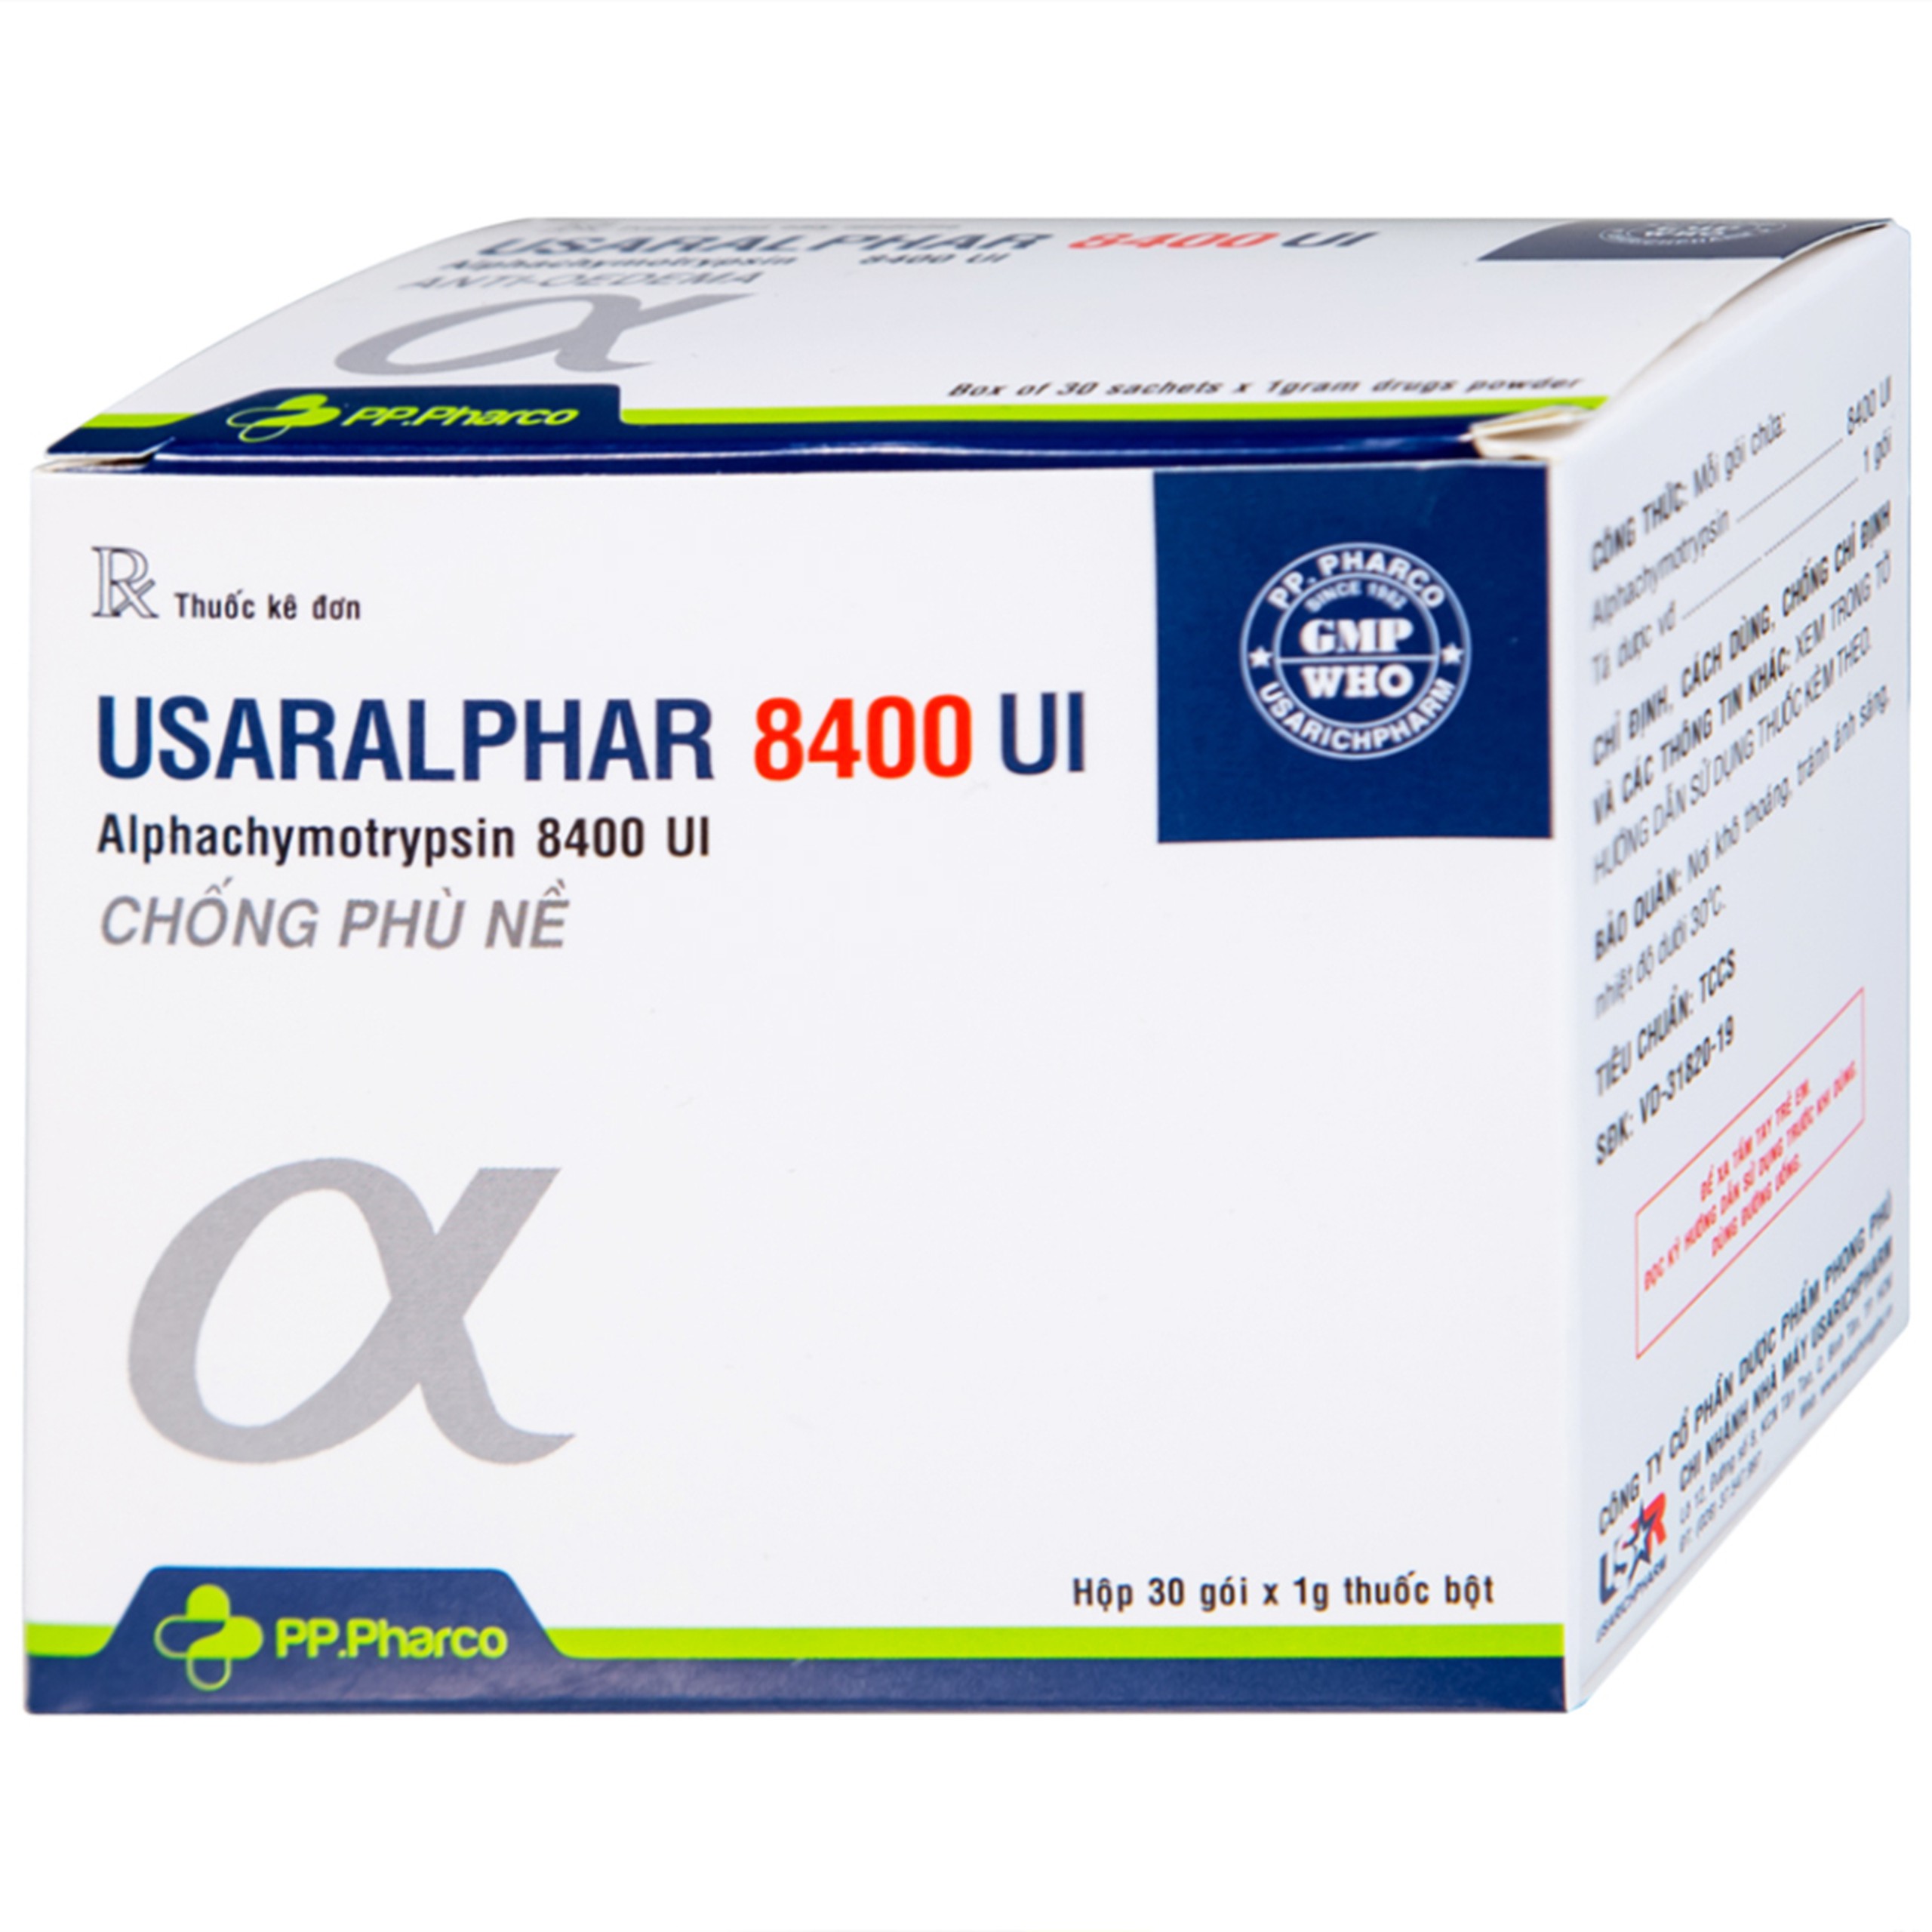 Thuốc Usaralphar 8400 UI PP.Pharco điều trị phù nề sau chấn thương, tổn thương mô mềm (30 gói x 1g)